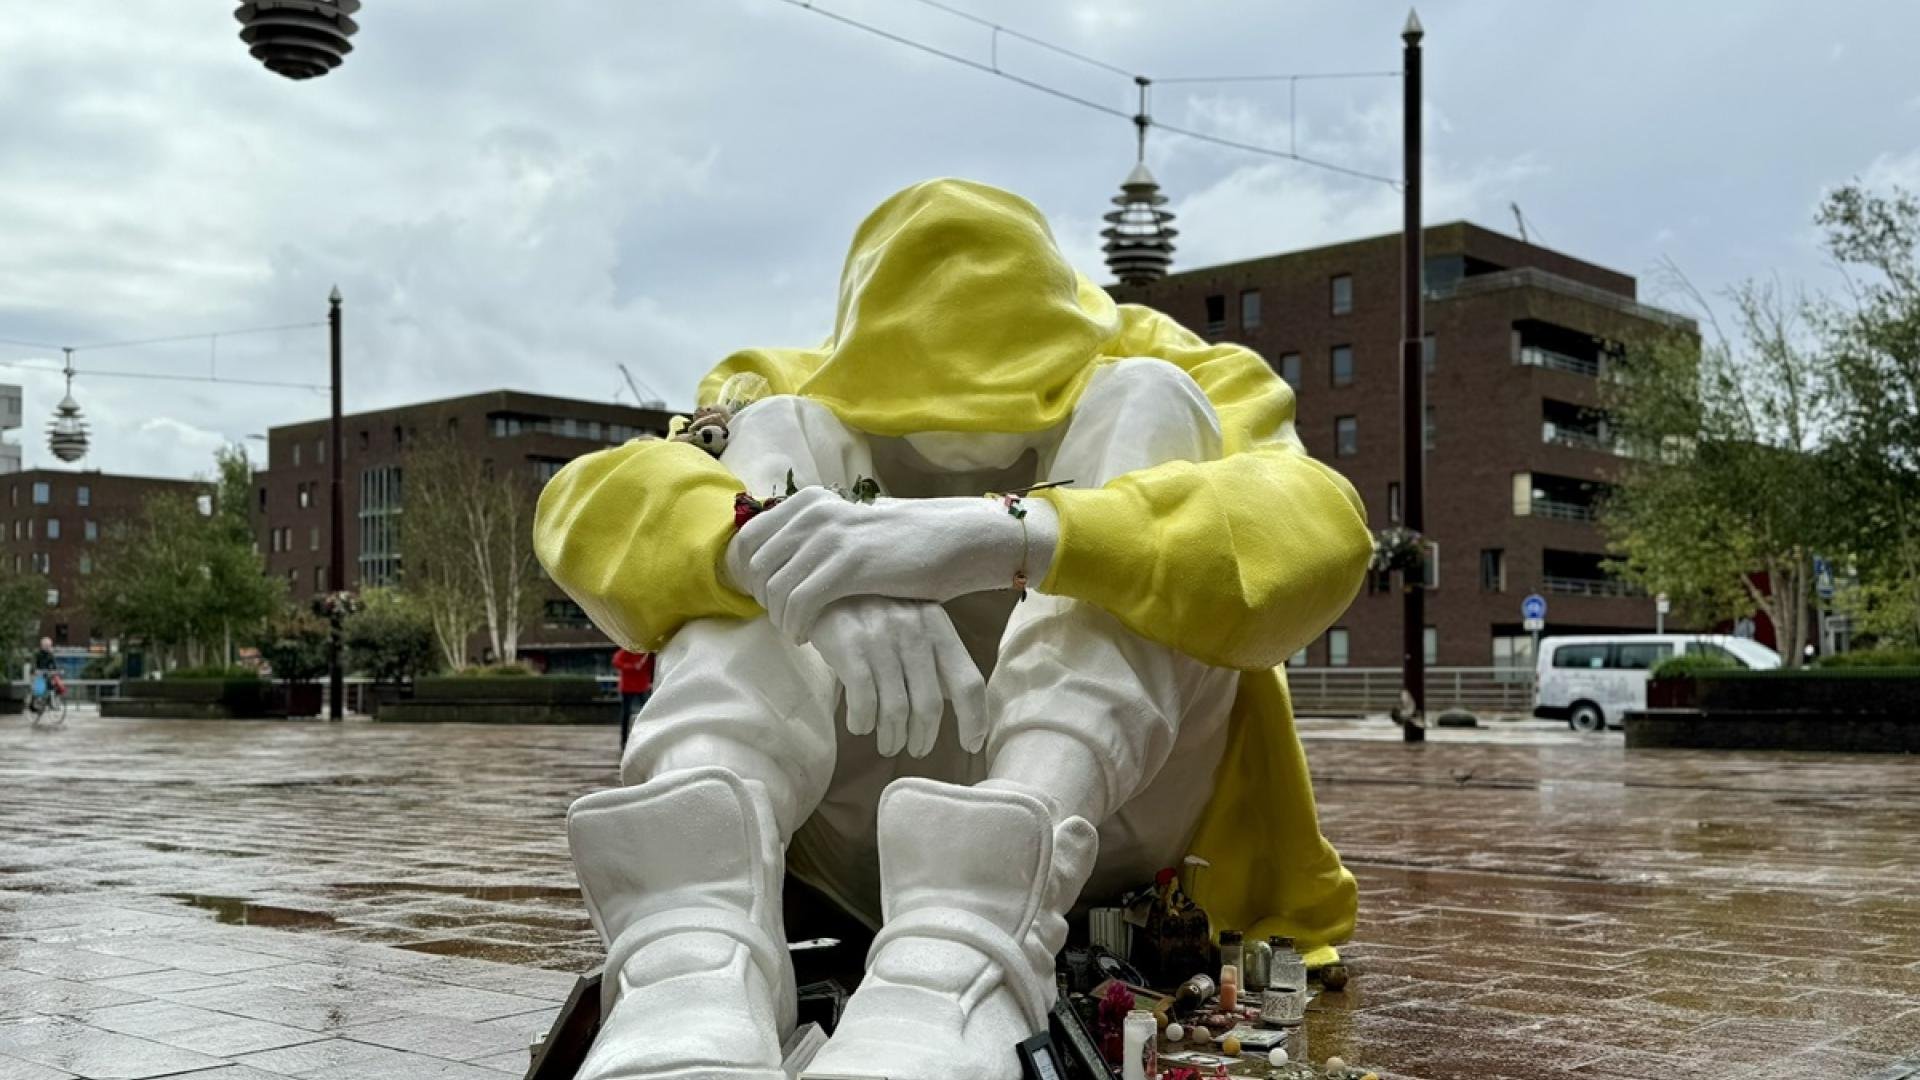 Meer dan levensgroot beeld van een jongere die ineengedoken zit met armen over de knieën. Beeld is uitgevoerd met wit materiaal, alleen de hoodie is geel.